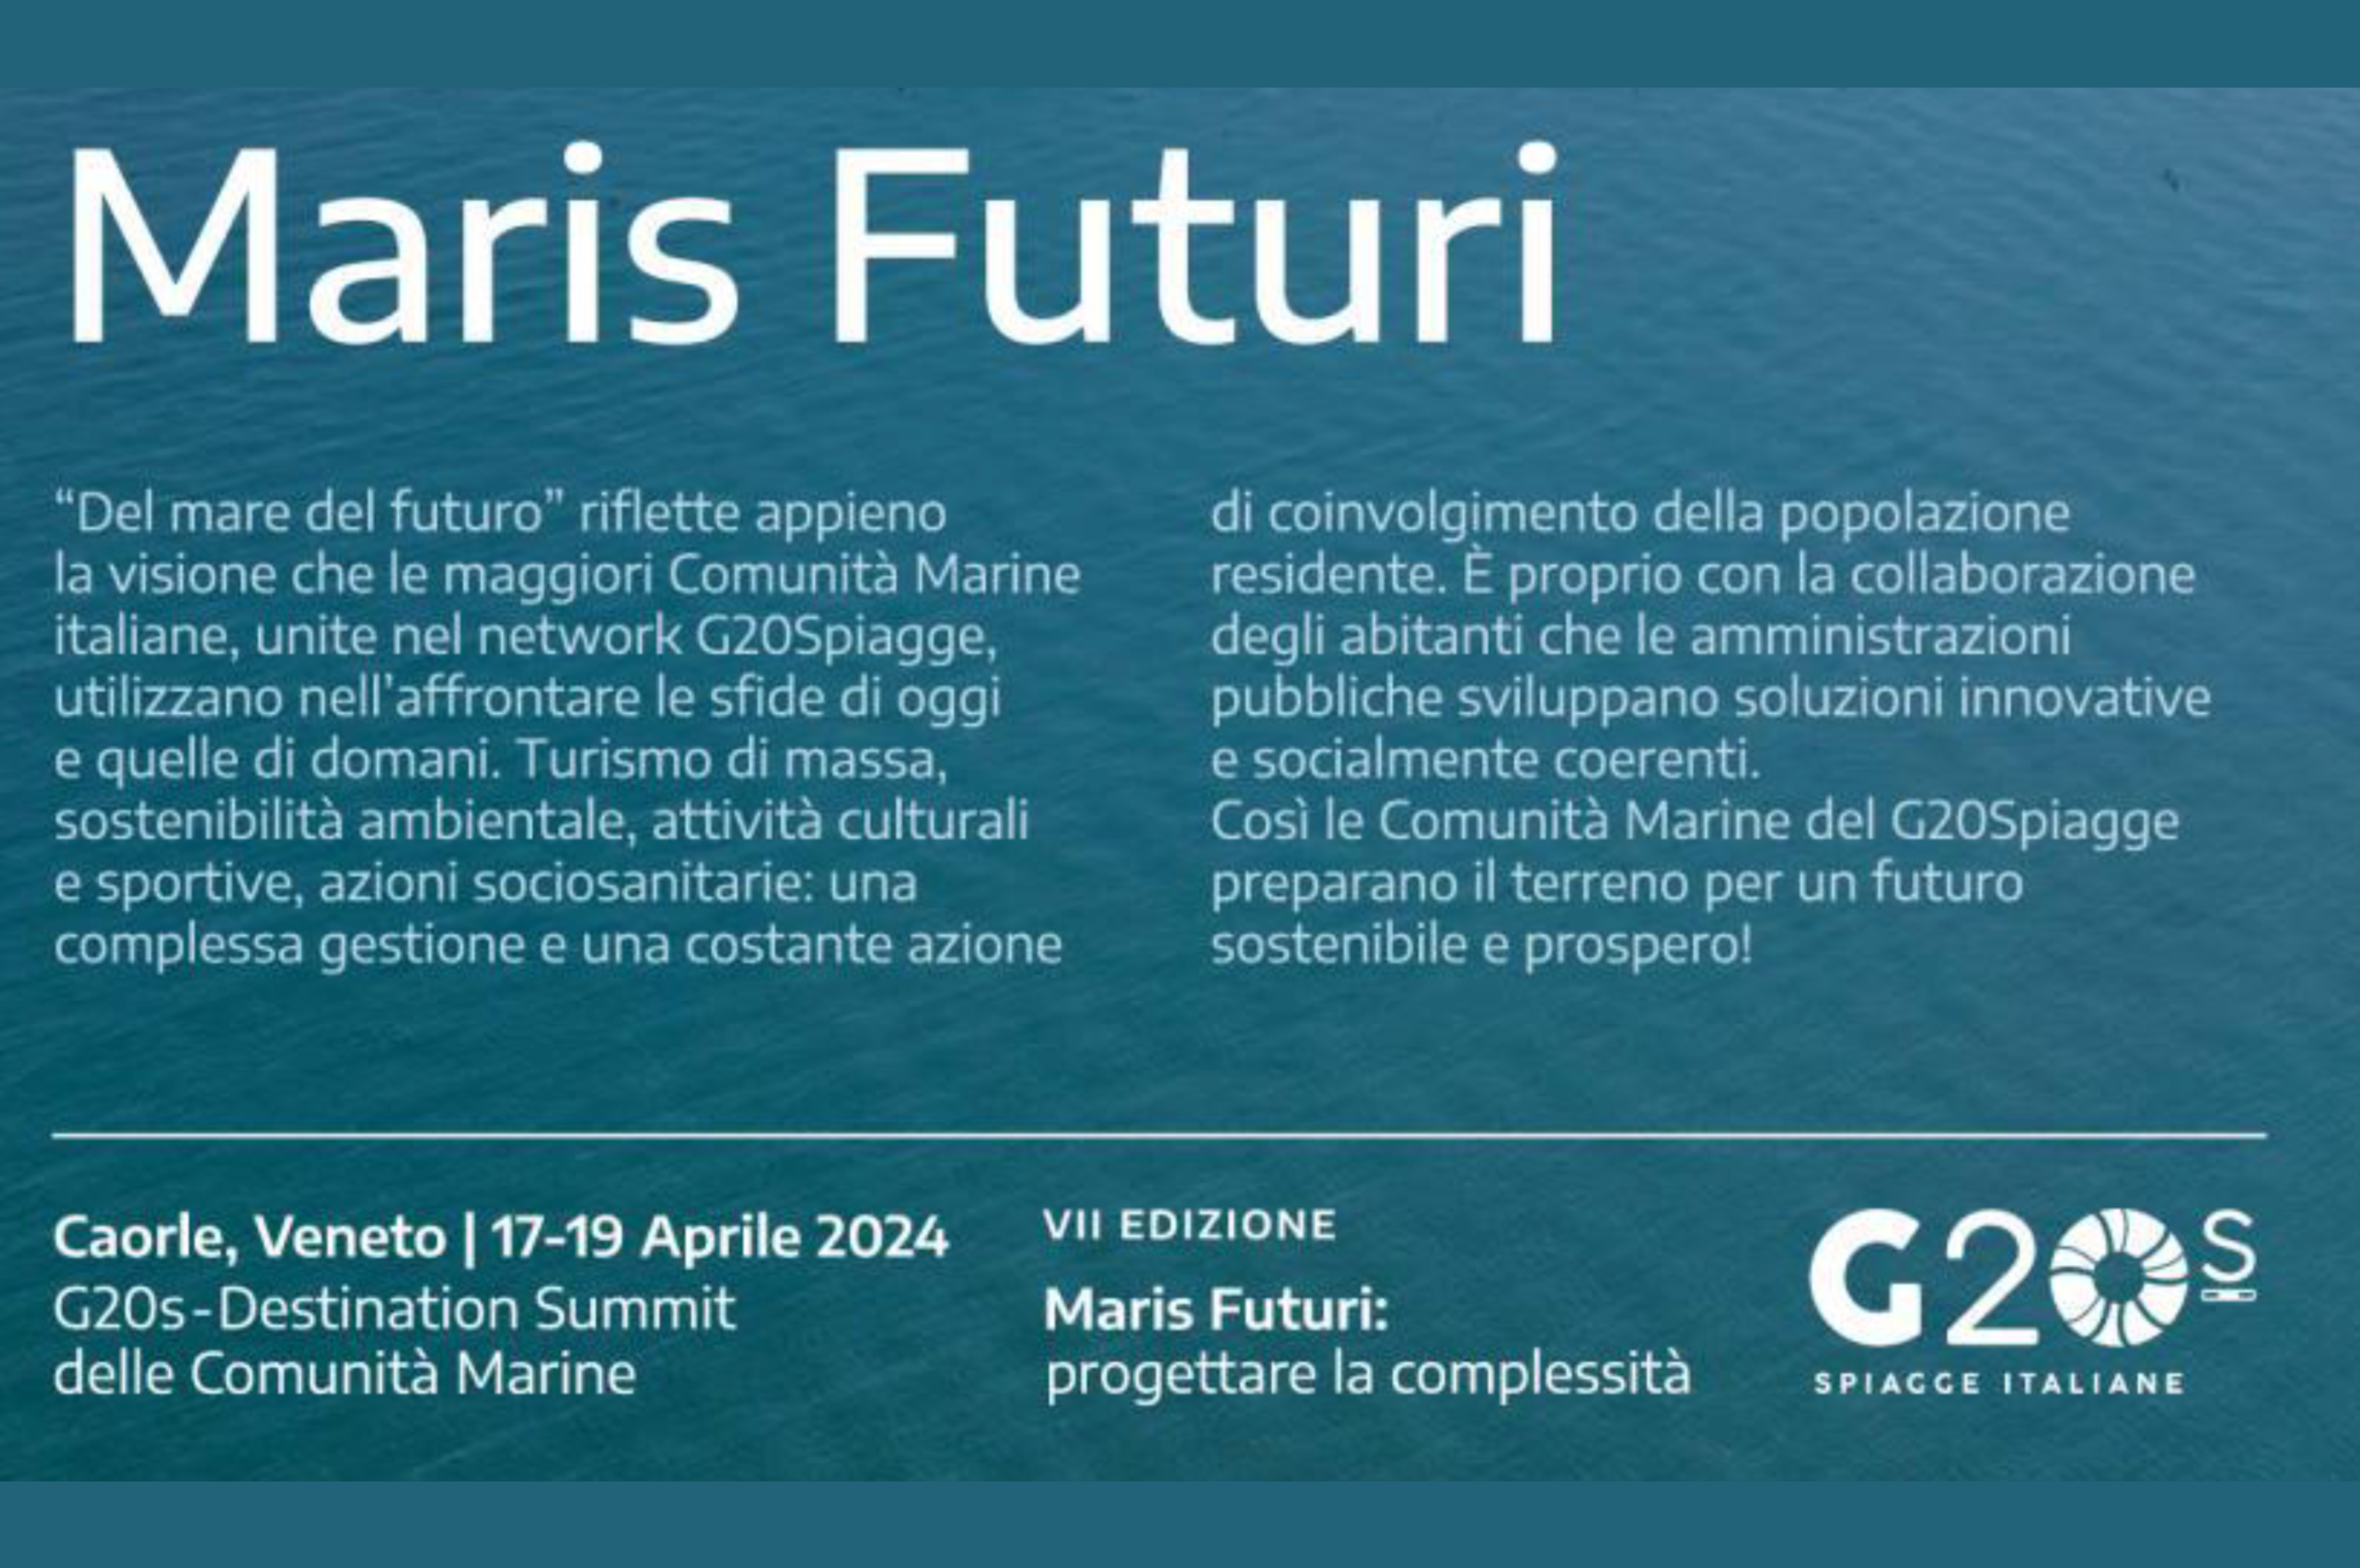 G20Spiagge. 7° Destination Summit delle Comunità Marine “Maris Futuri: progettare la complessità”